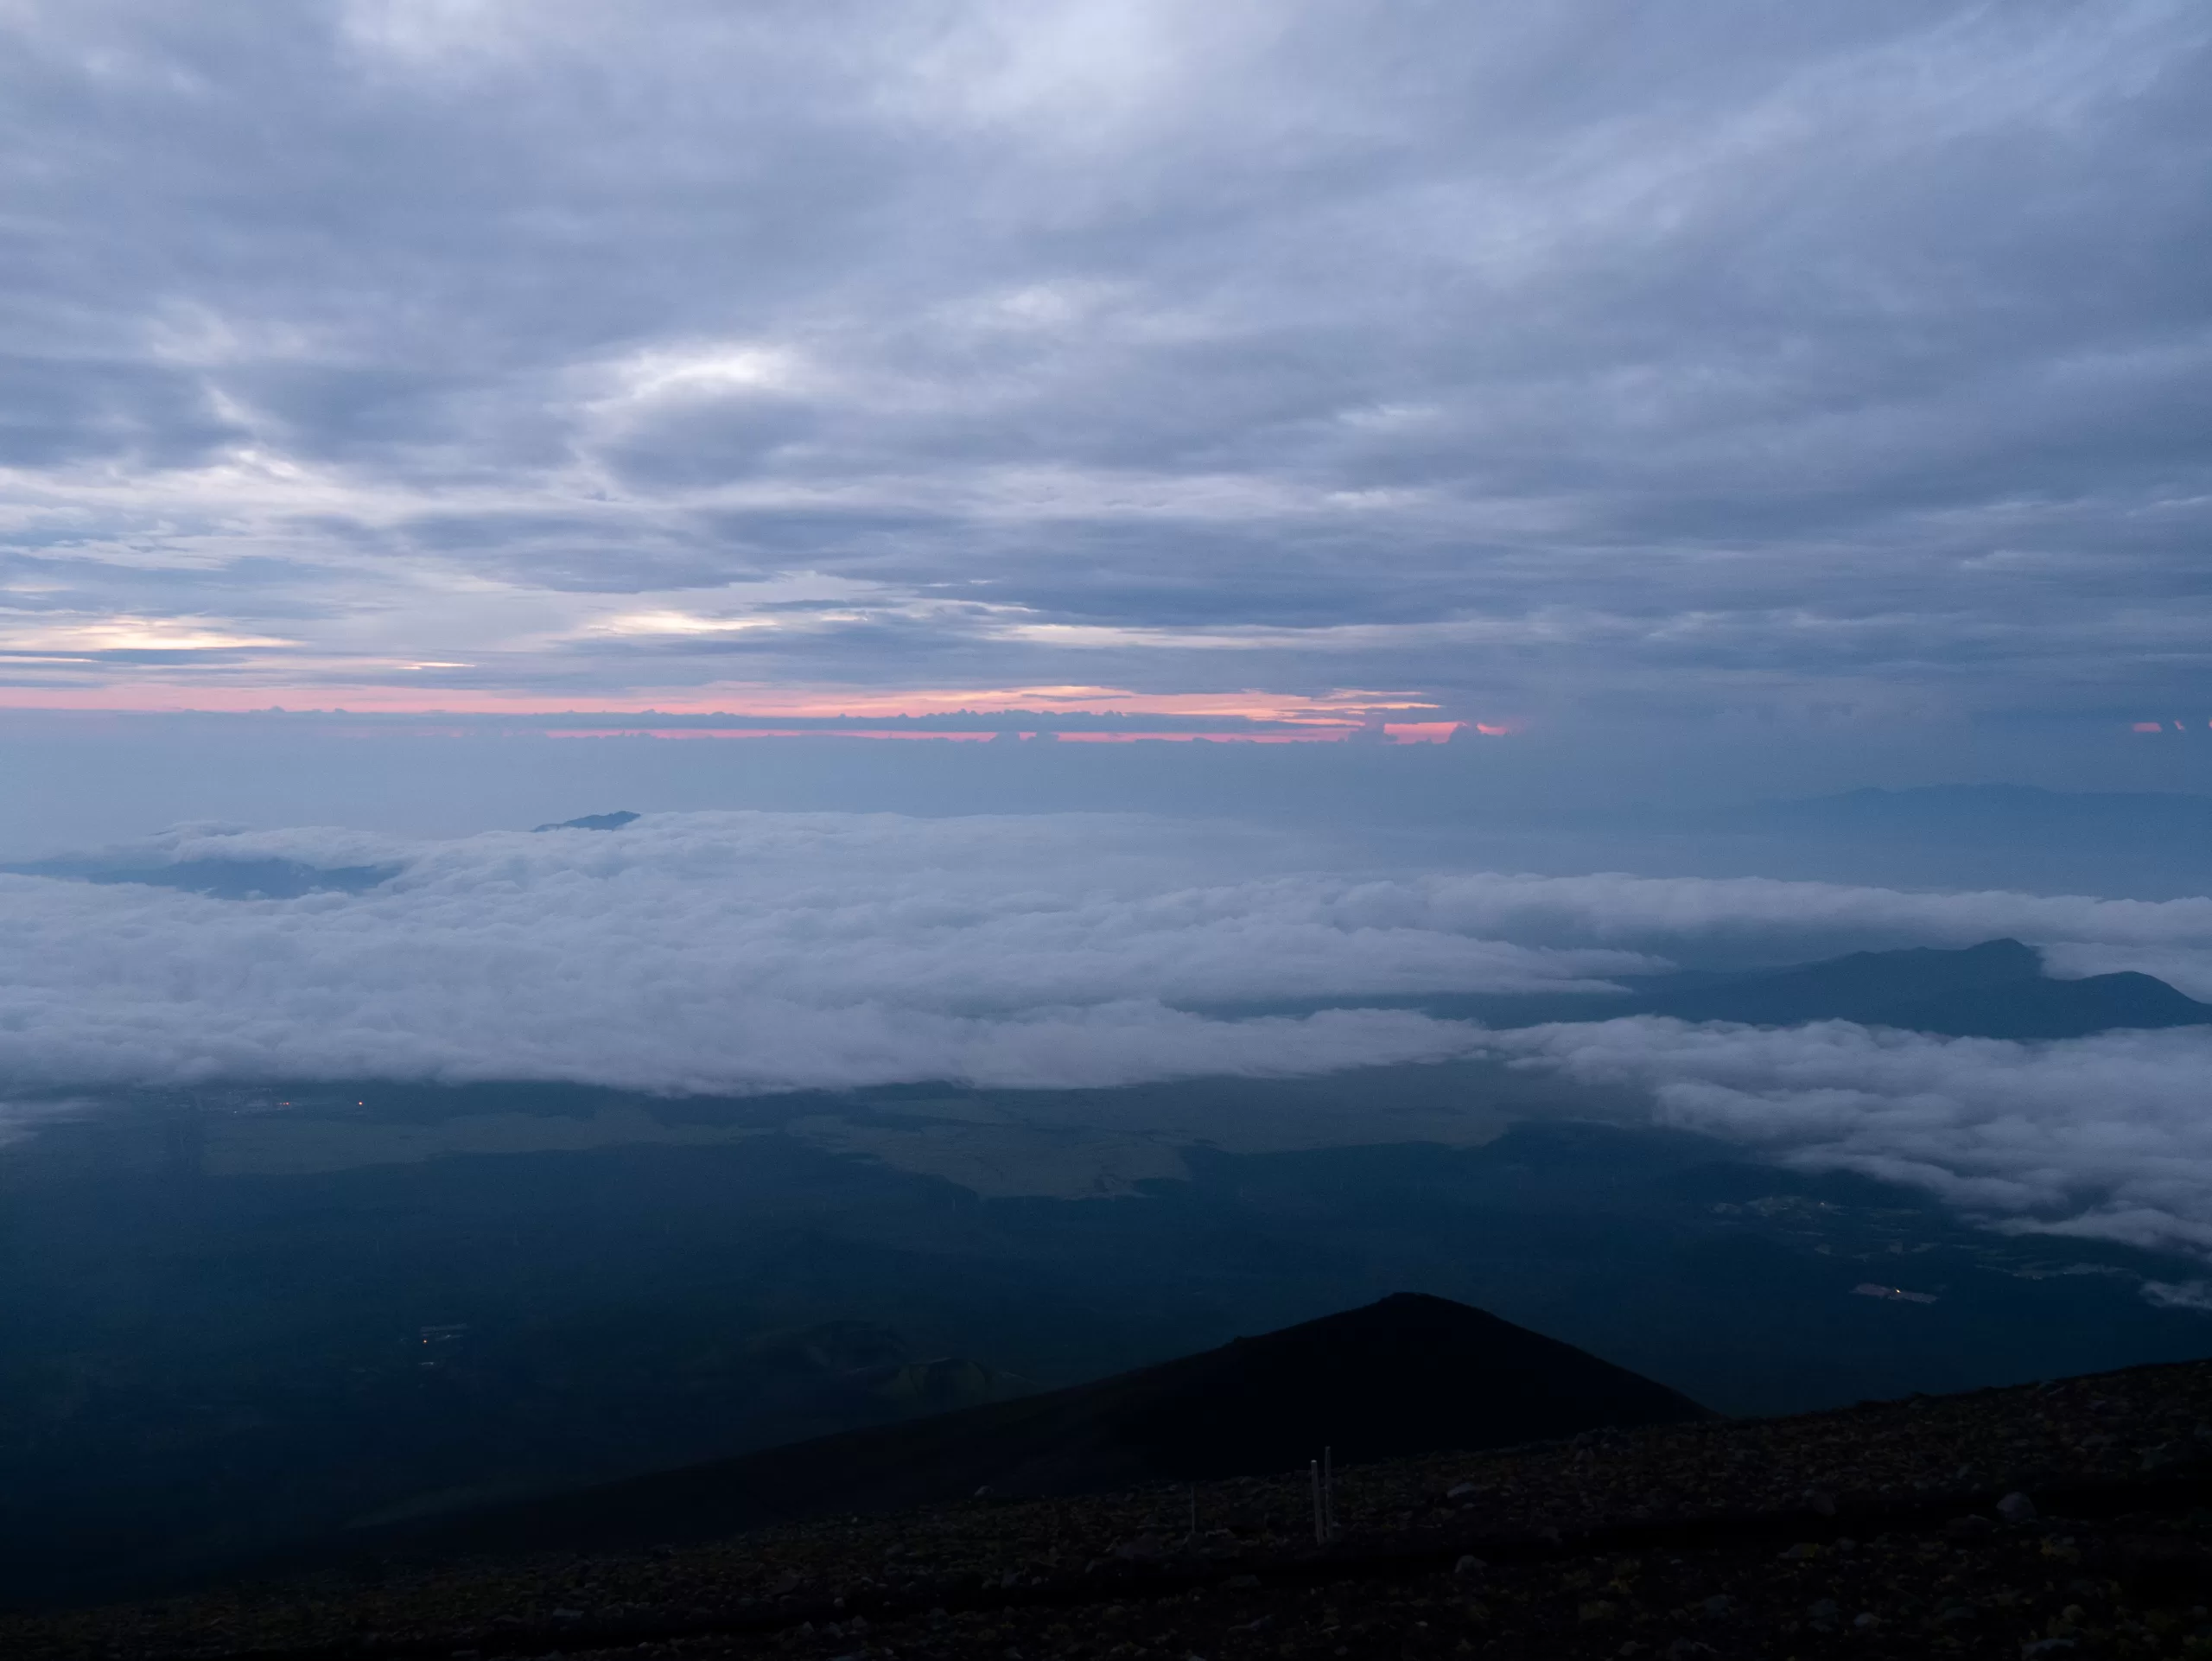 Jak jsem zdolal horu Fuji v Japonsku (trasou Gotemba trail) - Cestování po Japonsku - Petr Sycha